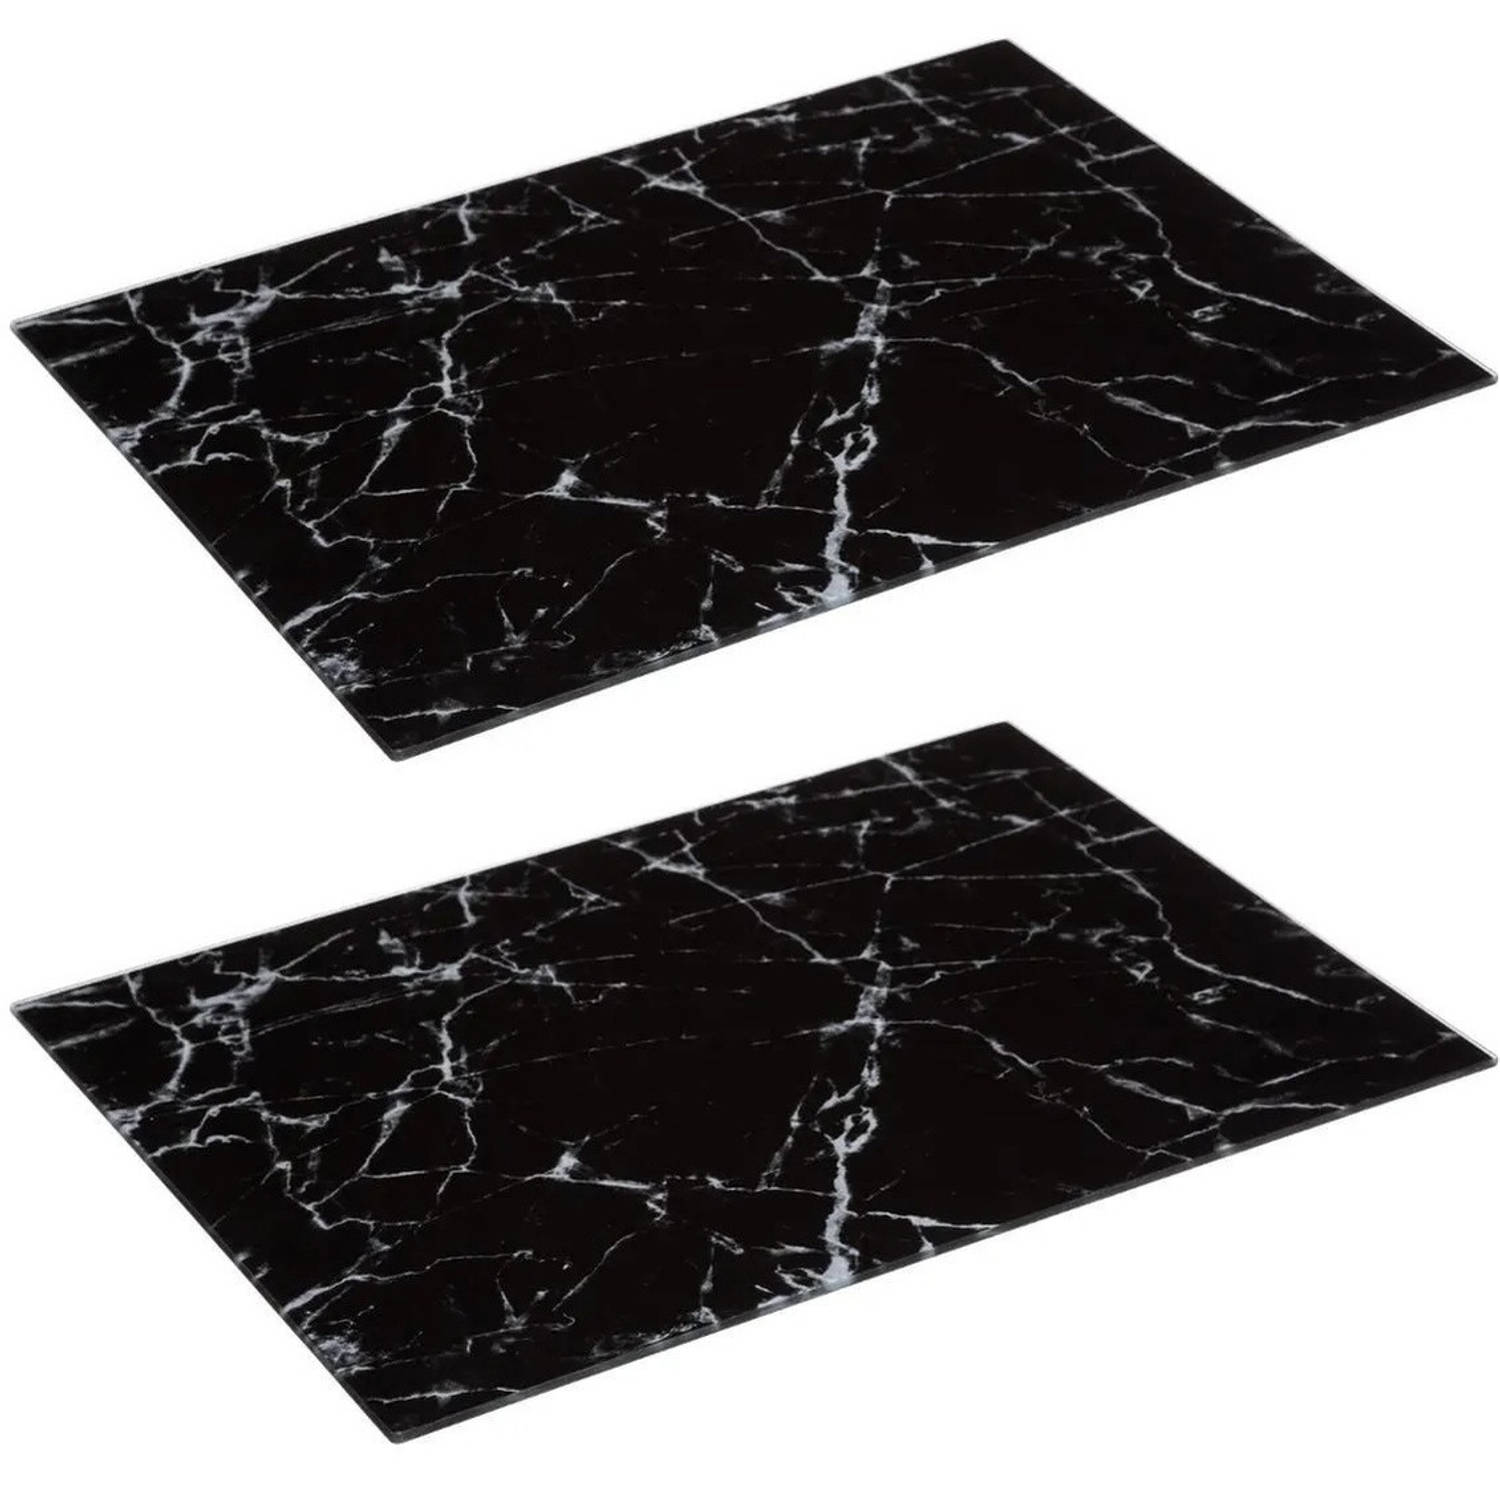 2x Stuks snijplank rechthoek zwart met marmer print 40 x 30 cm van glas Snijplanken